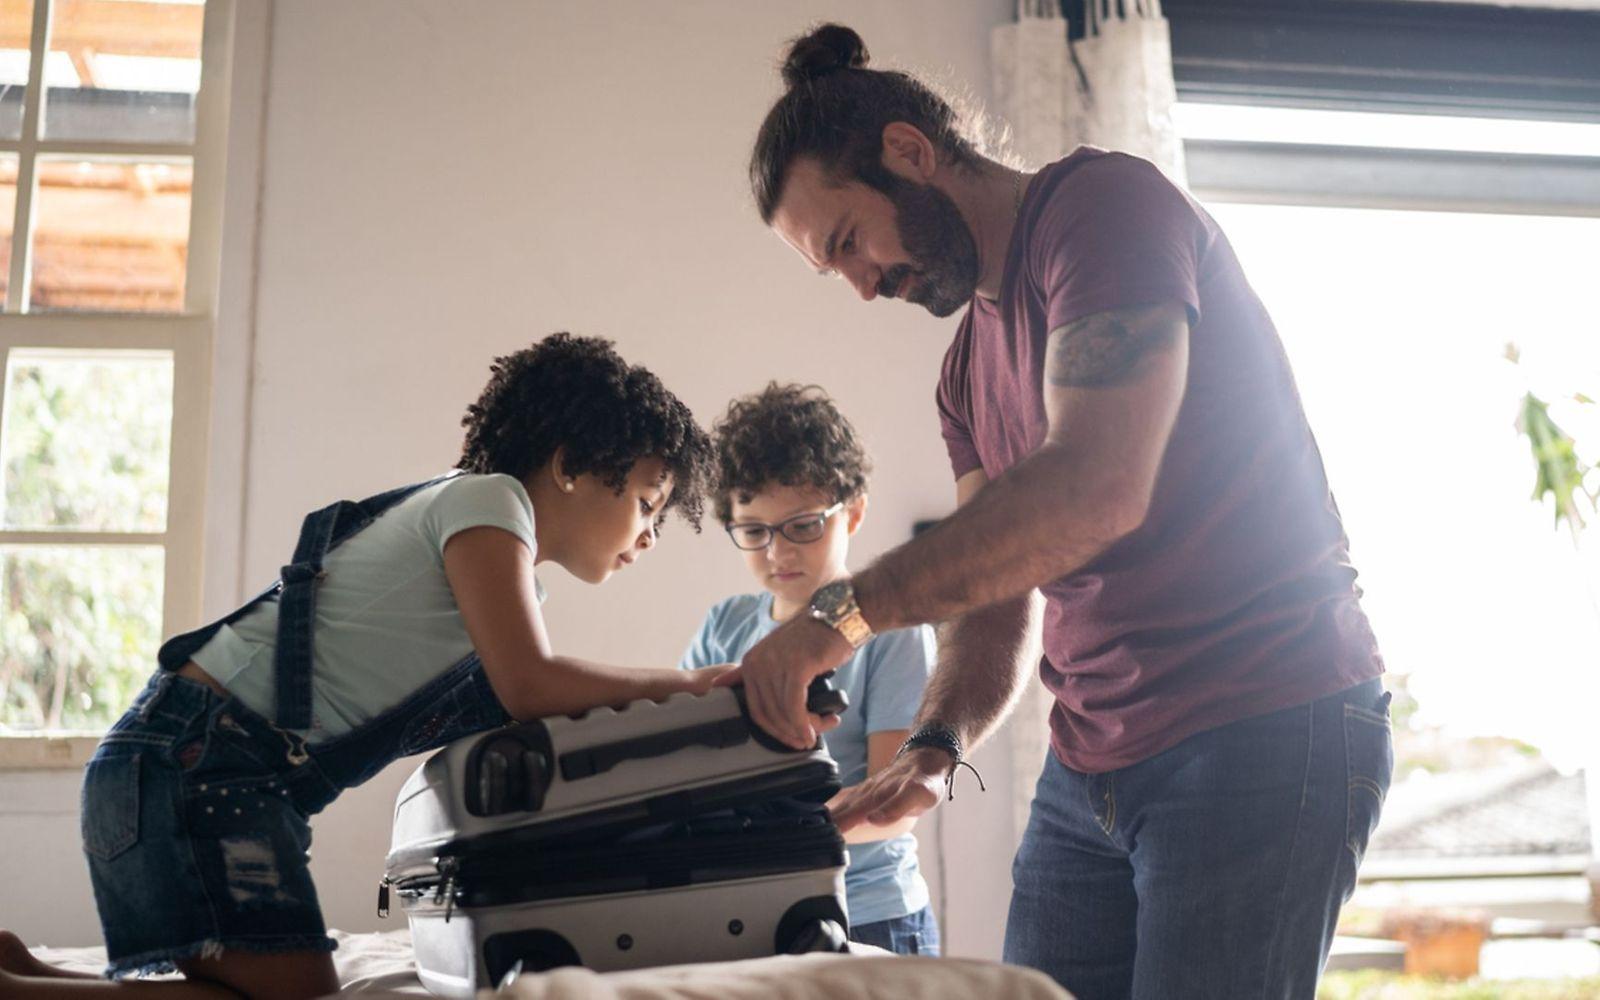 Vorbereitung Urlaub: Ein Vater packt mit zwei Kindern einen Koffer.